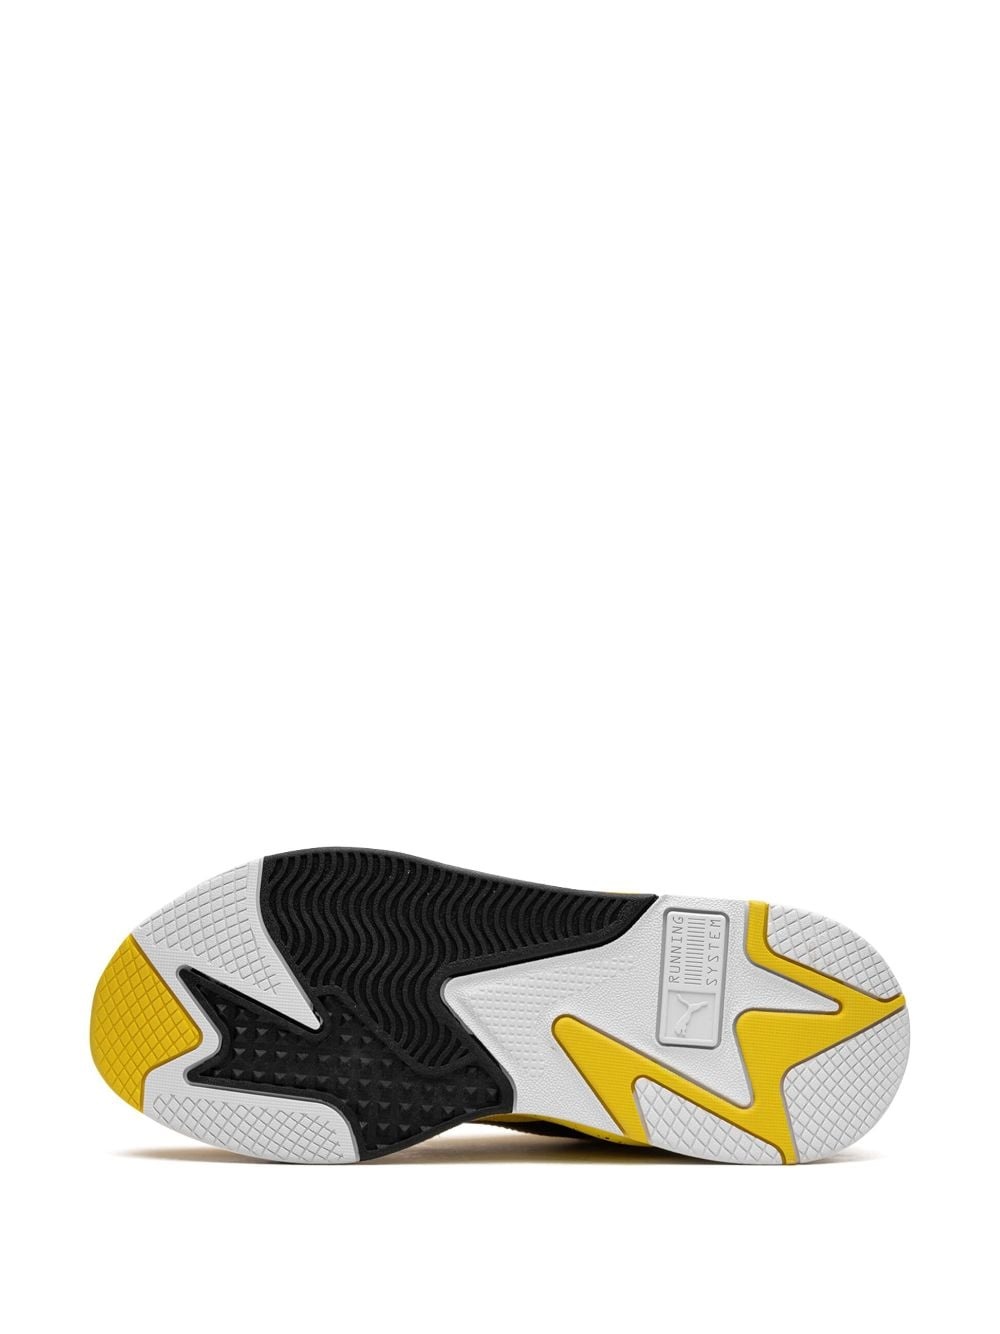 x PokÃ©mon "Pikachu" RS-X sneakers - 4